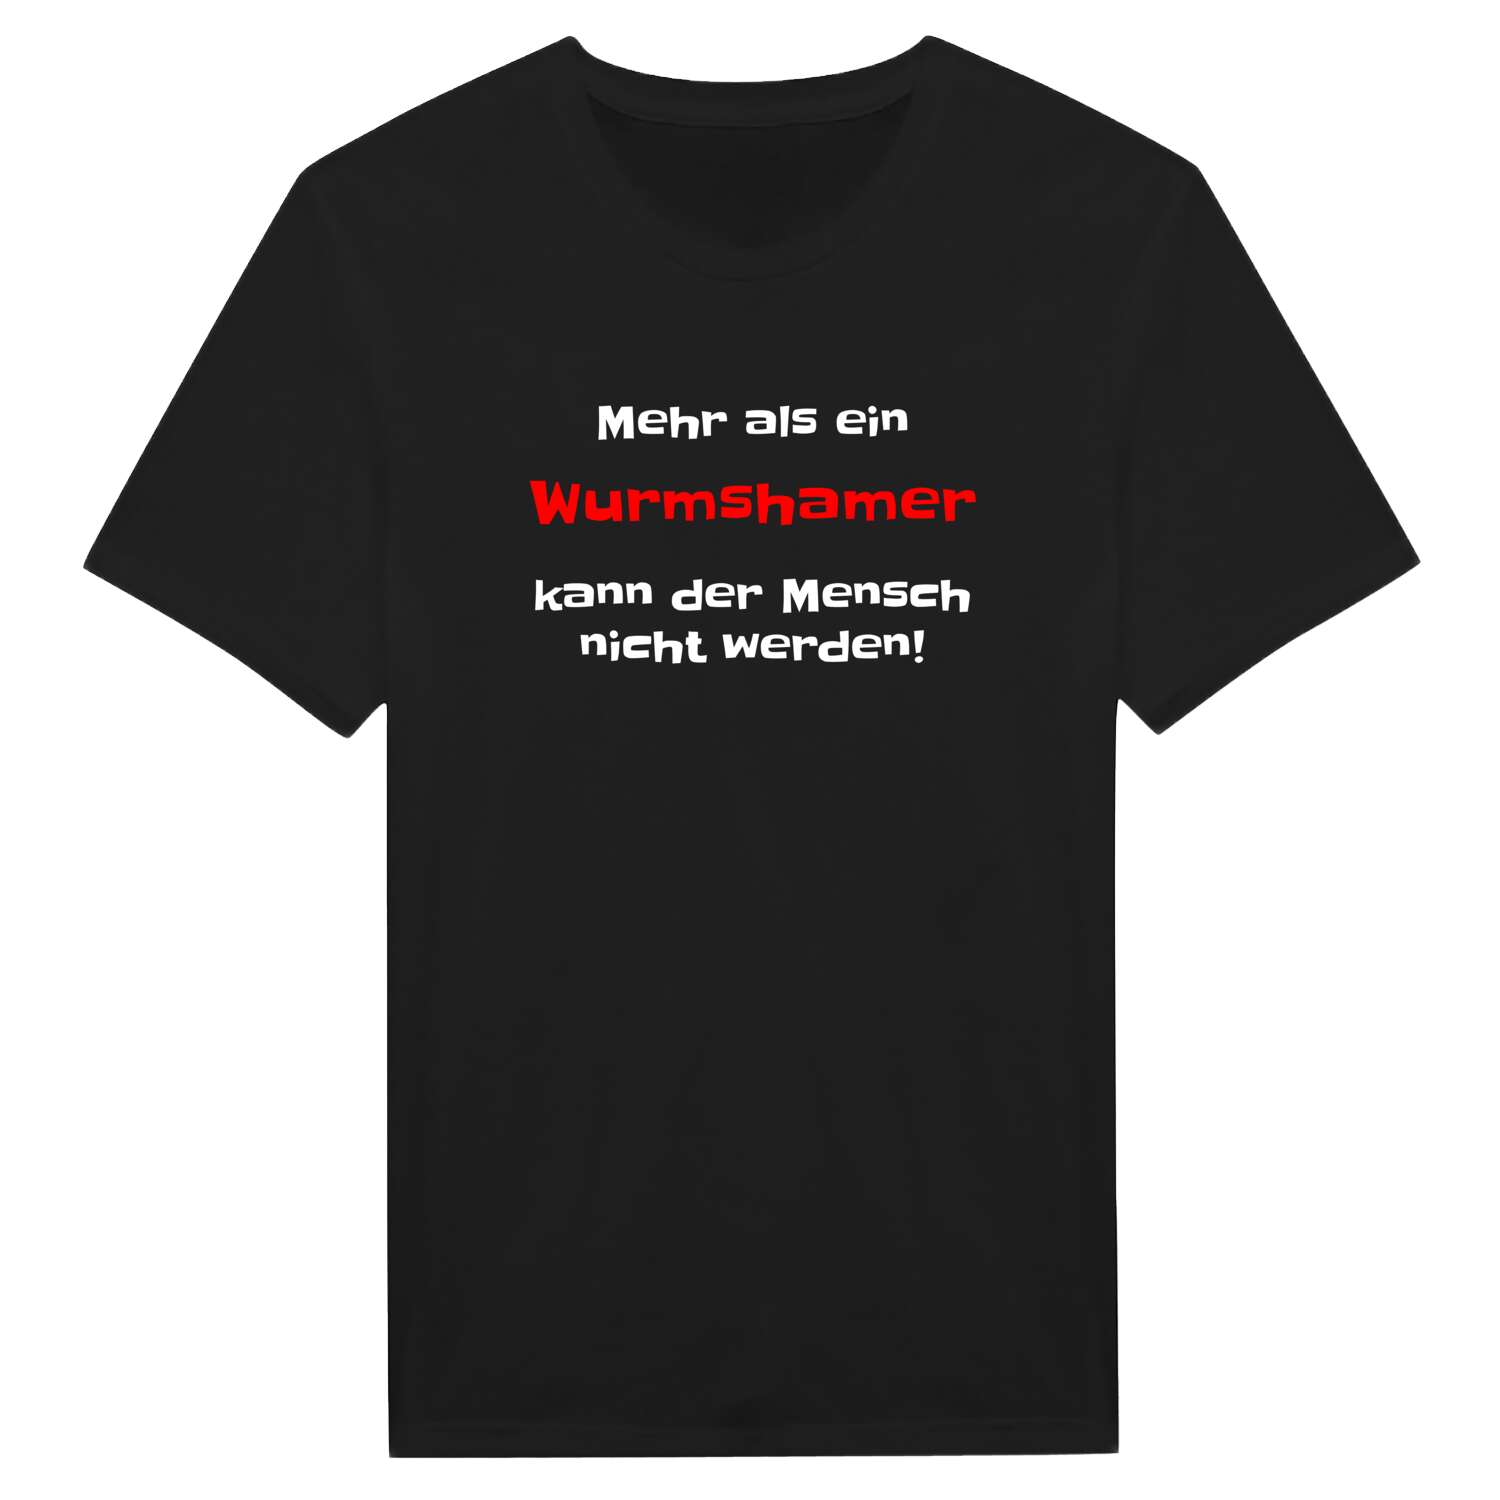 Wurmsham T-Shirt »Mehr als ein«